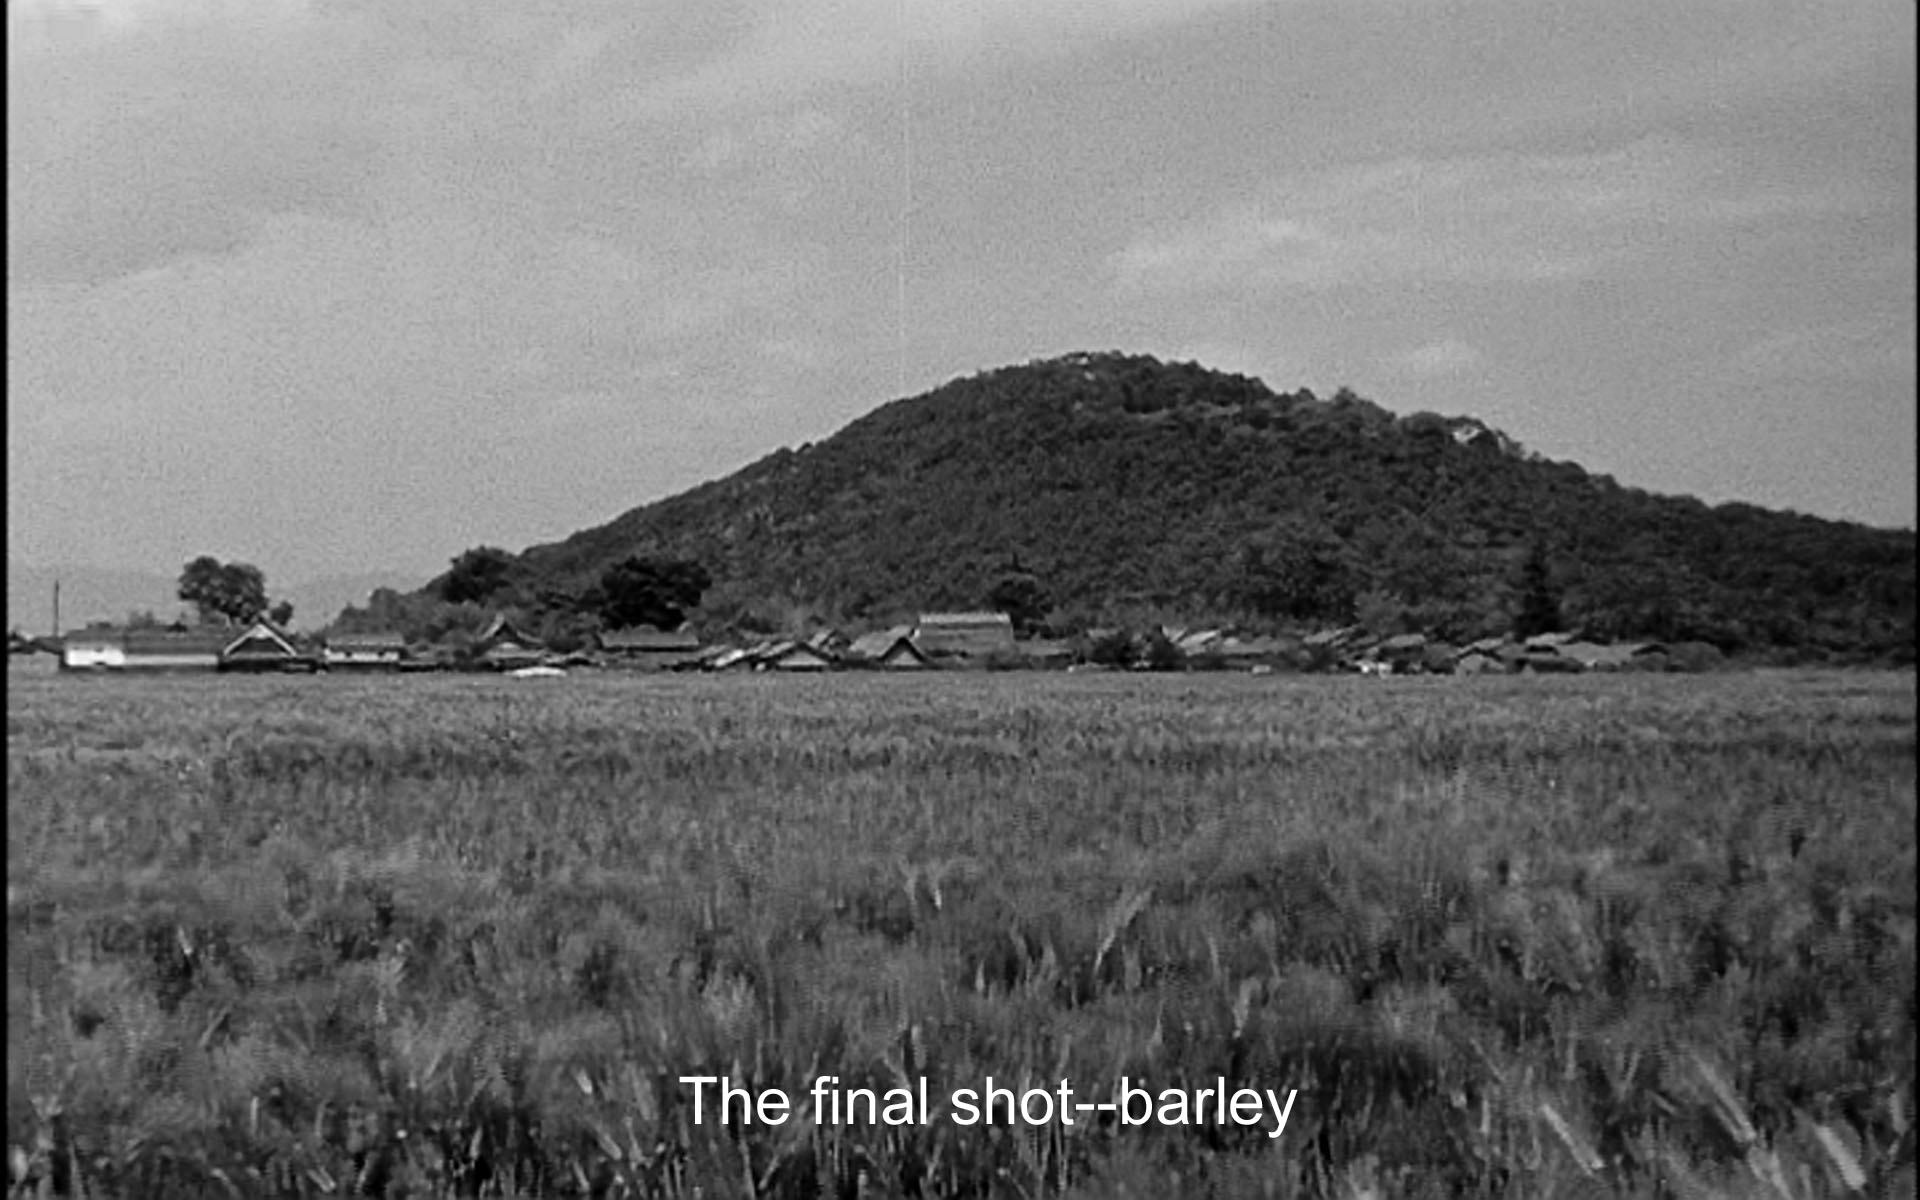 The final shot: barley